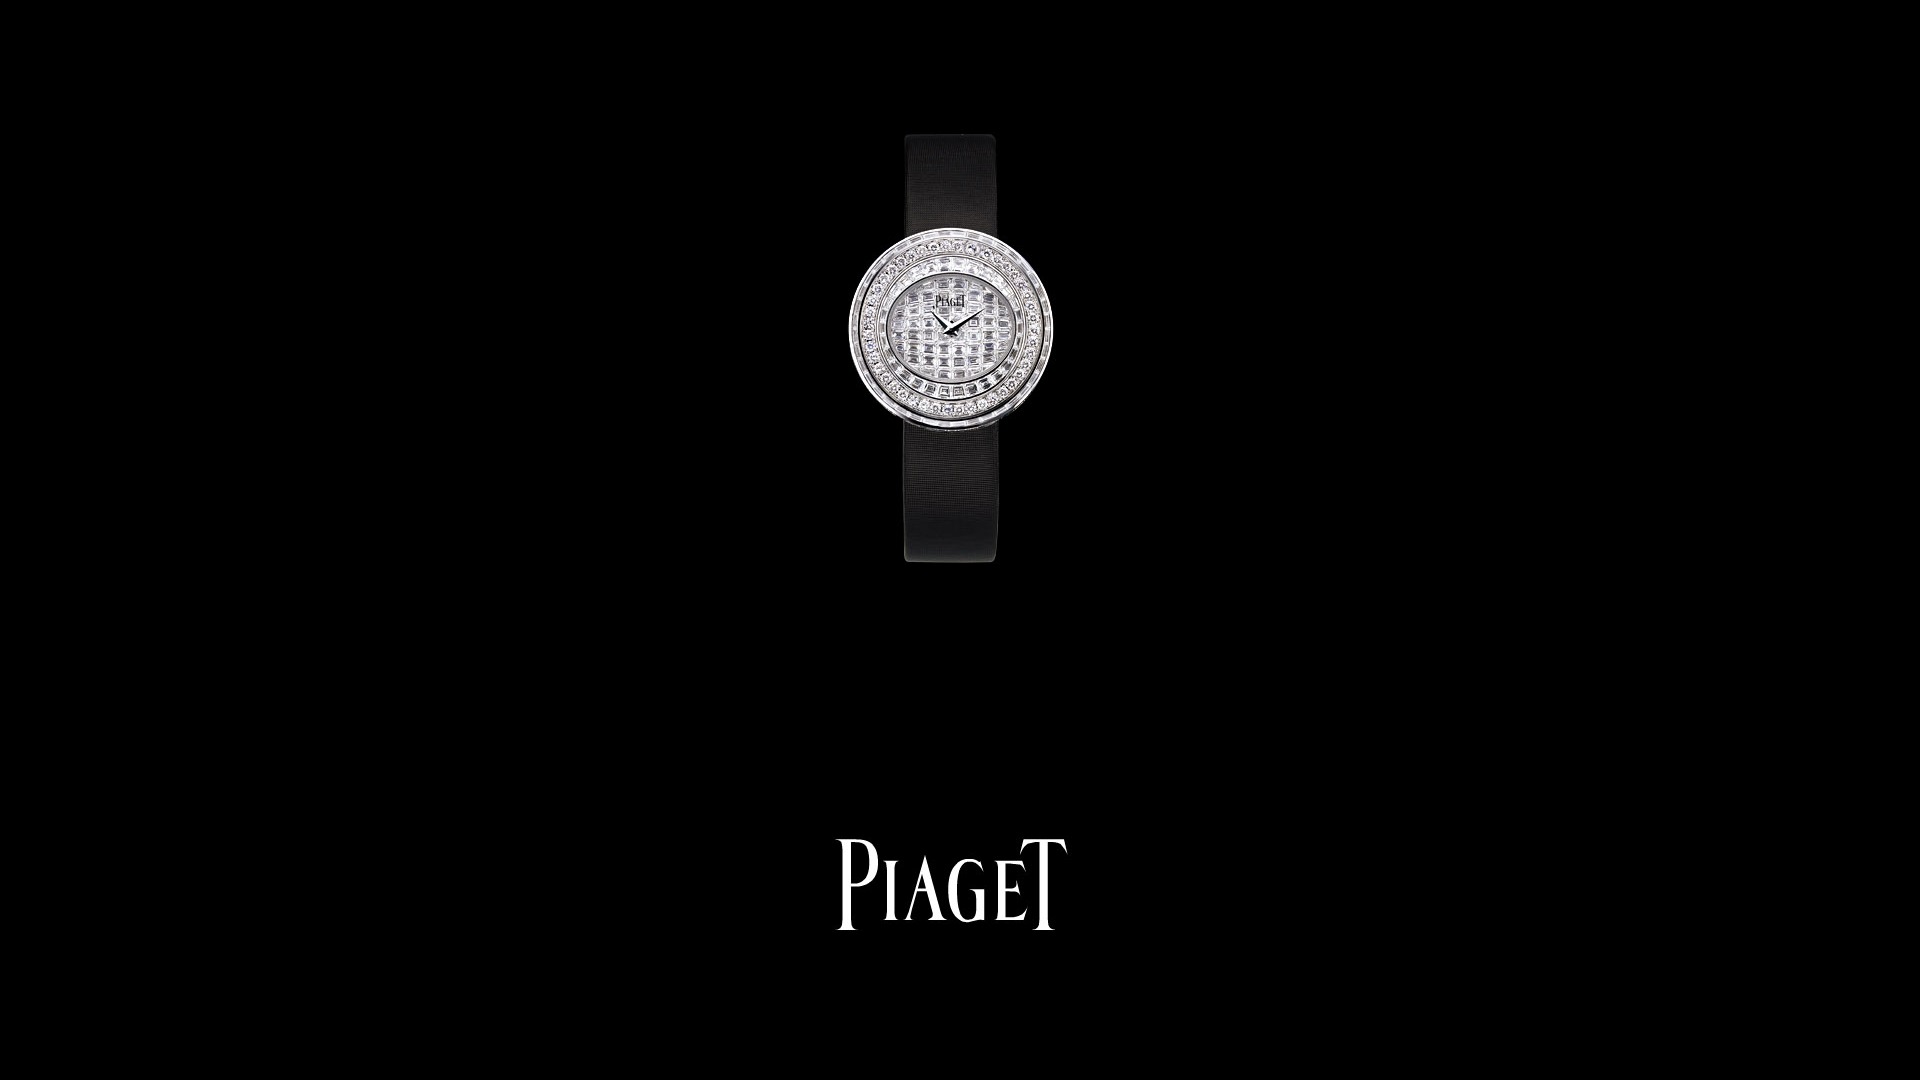 Piaget Diamante fondos de escritorio de reloj (1) #15 - 1920x1080